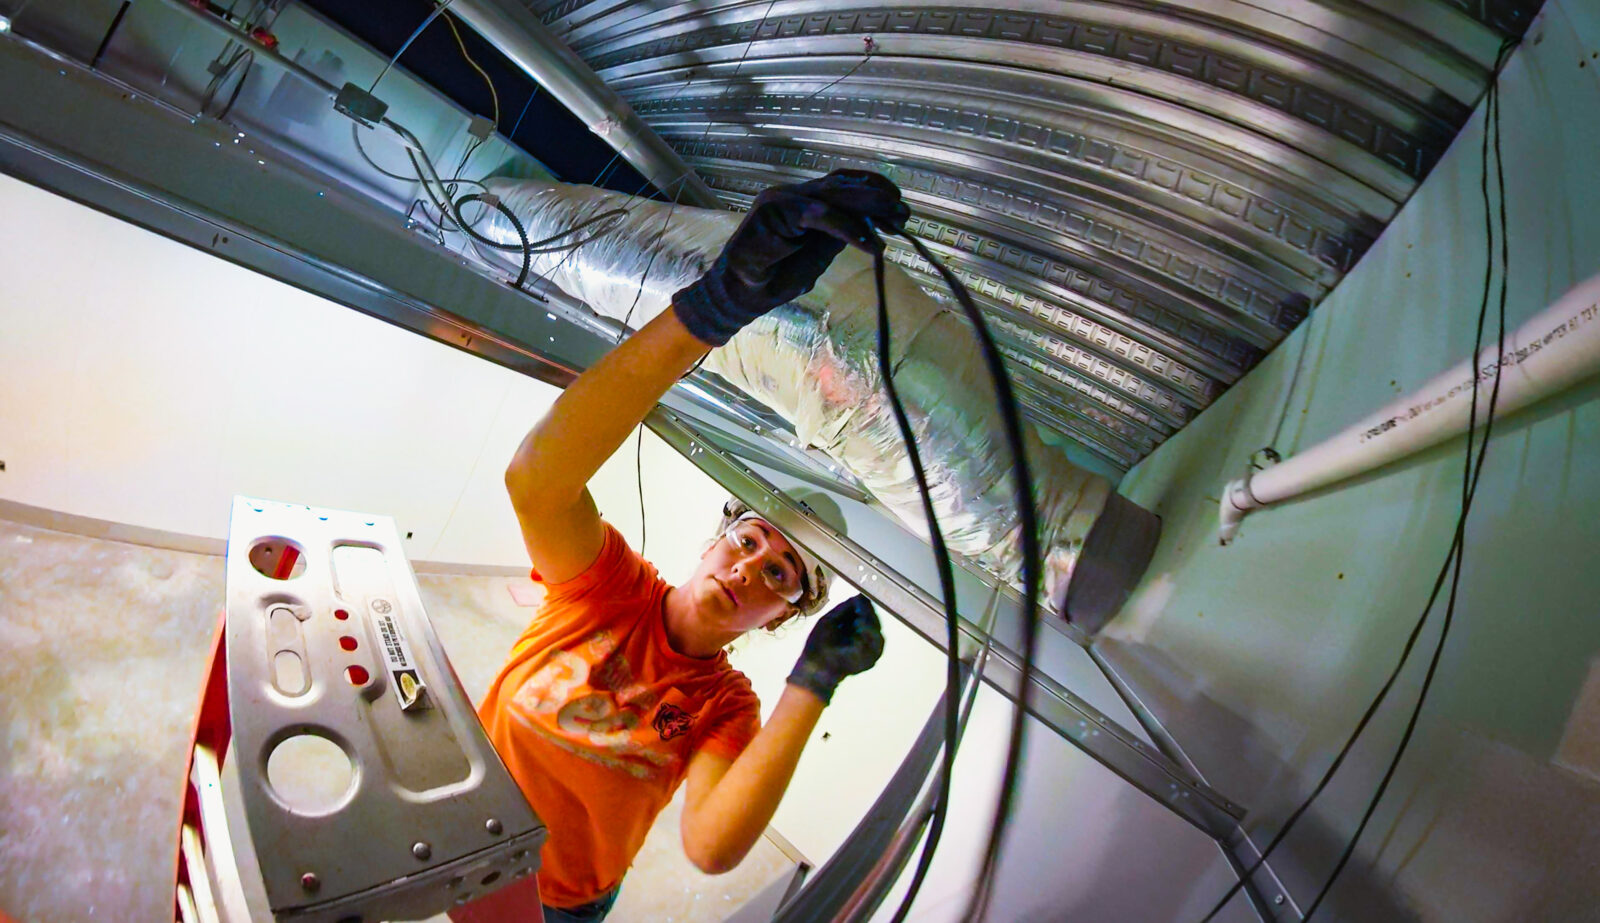 Huen worker on a ladder adjusting ceiling cables